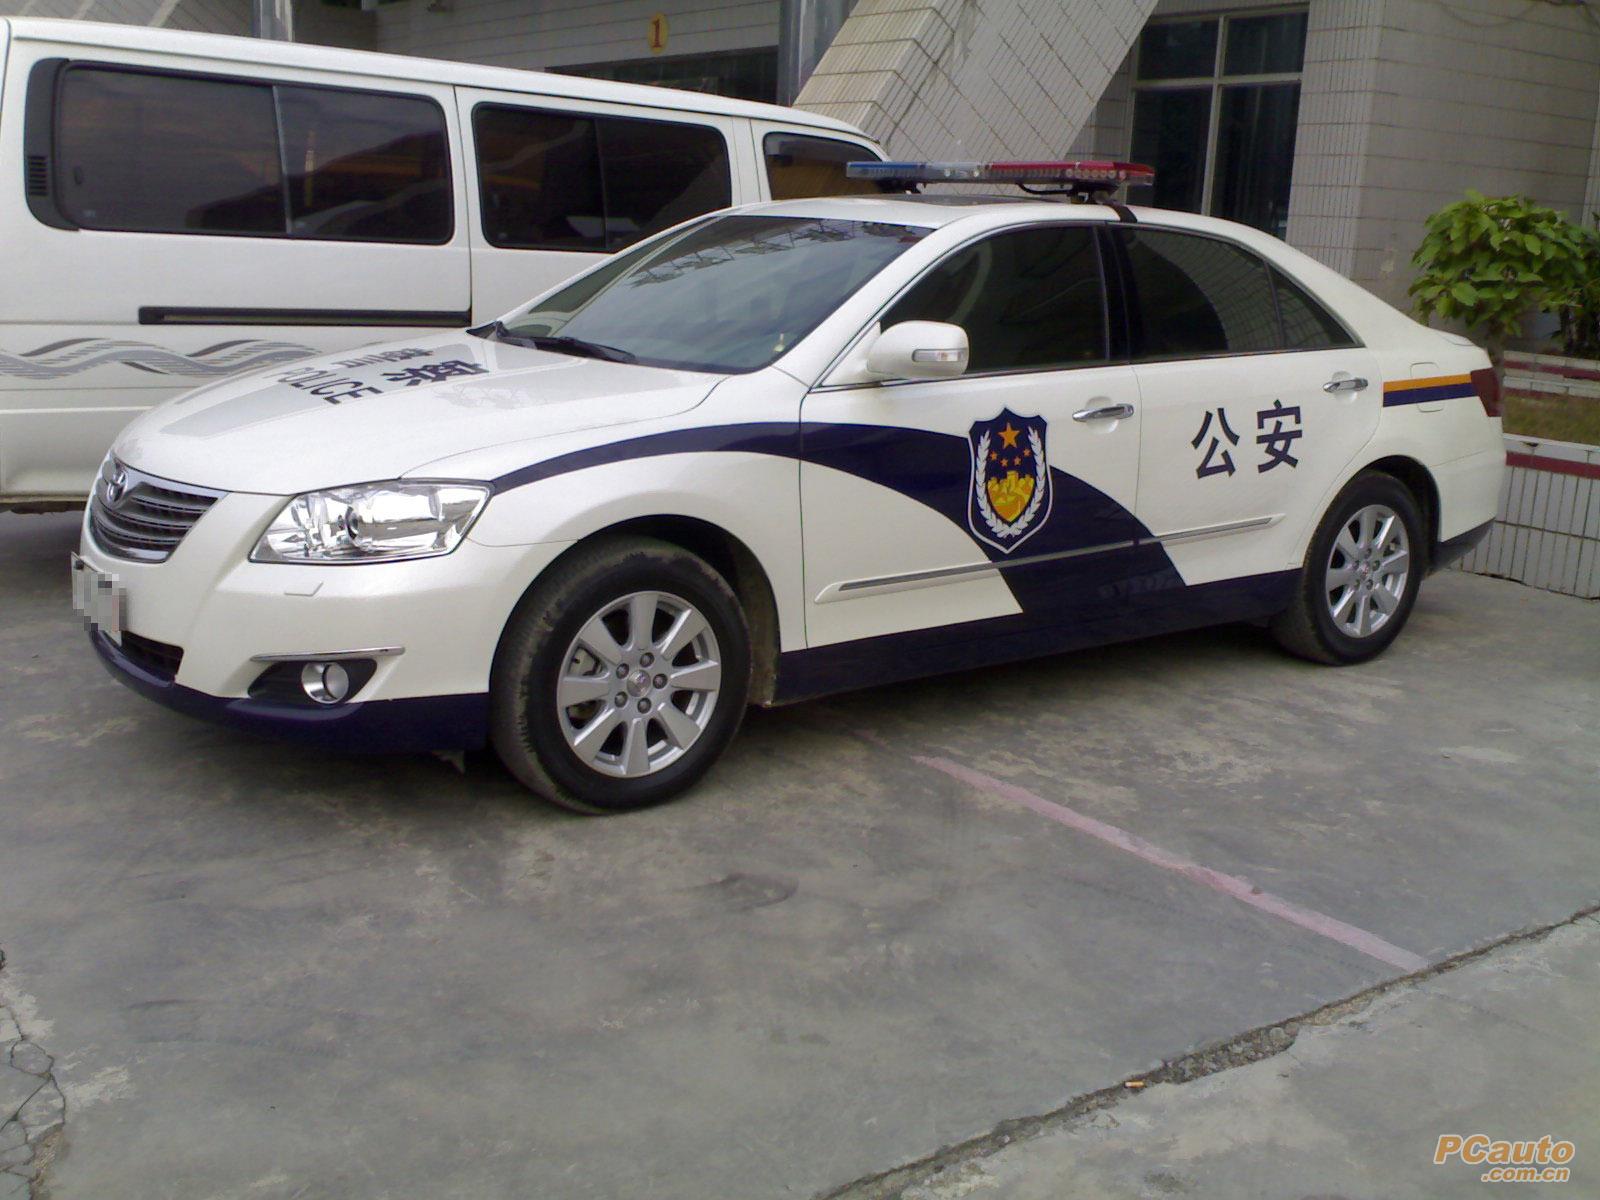 【4k】北京公安警车特警及应急车辆_哔哩哔哩 (゜-゜)つロ 干杯~-bilibili